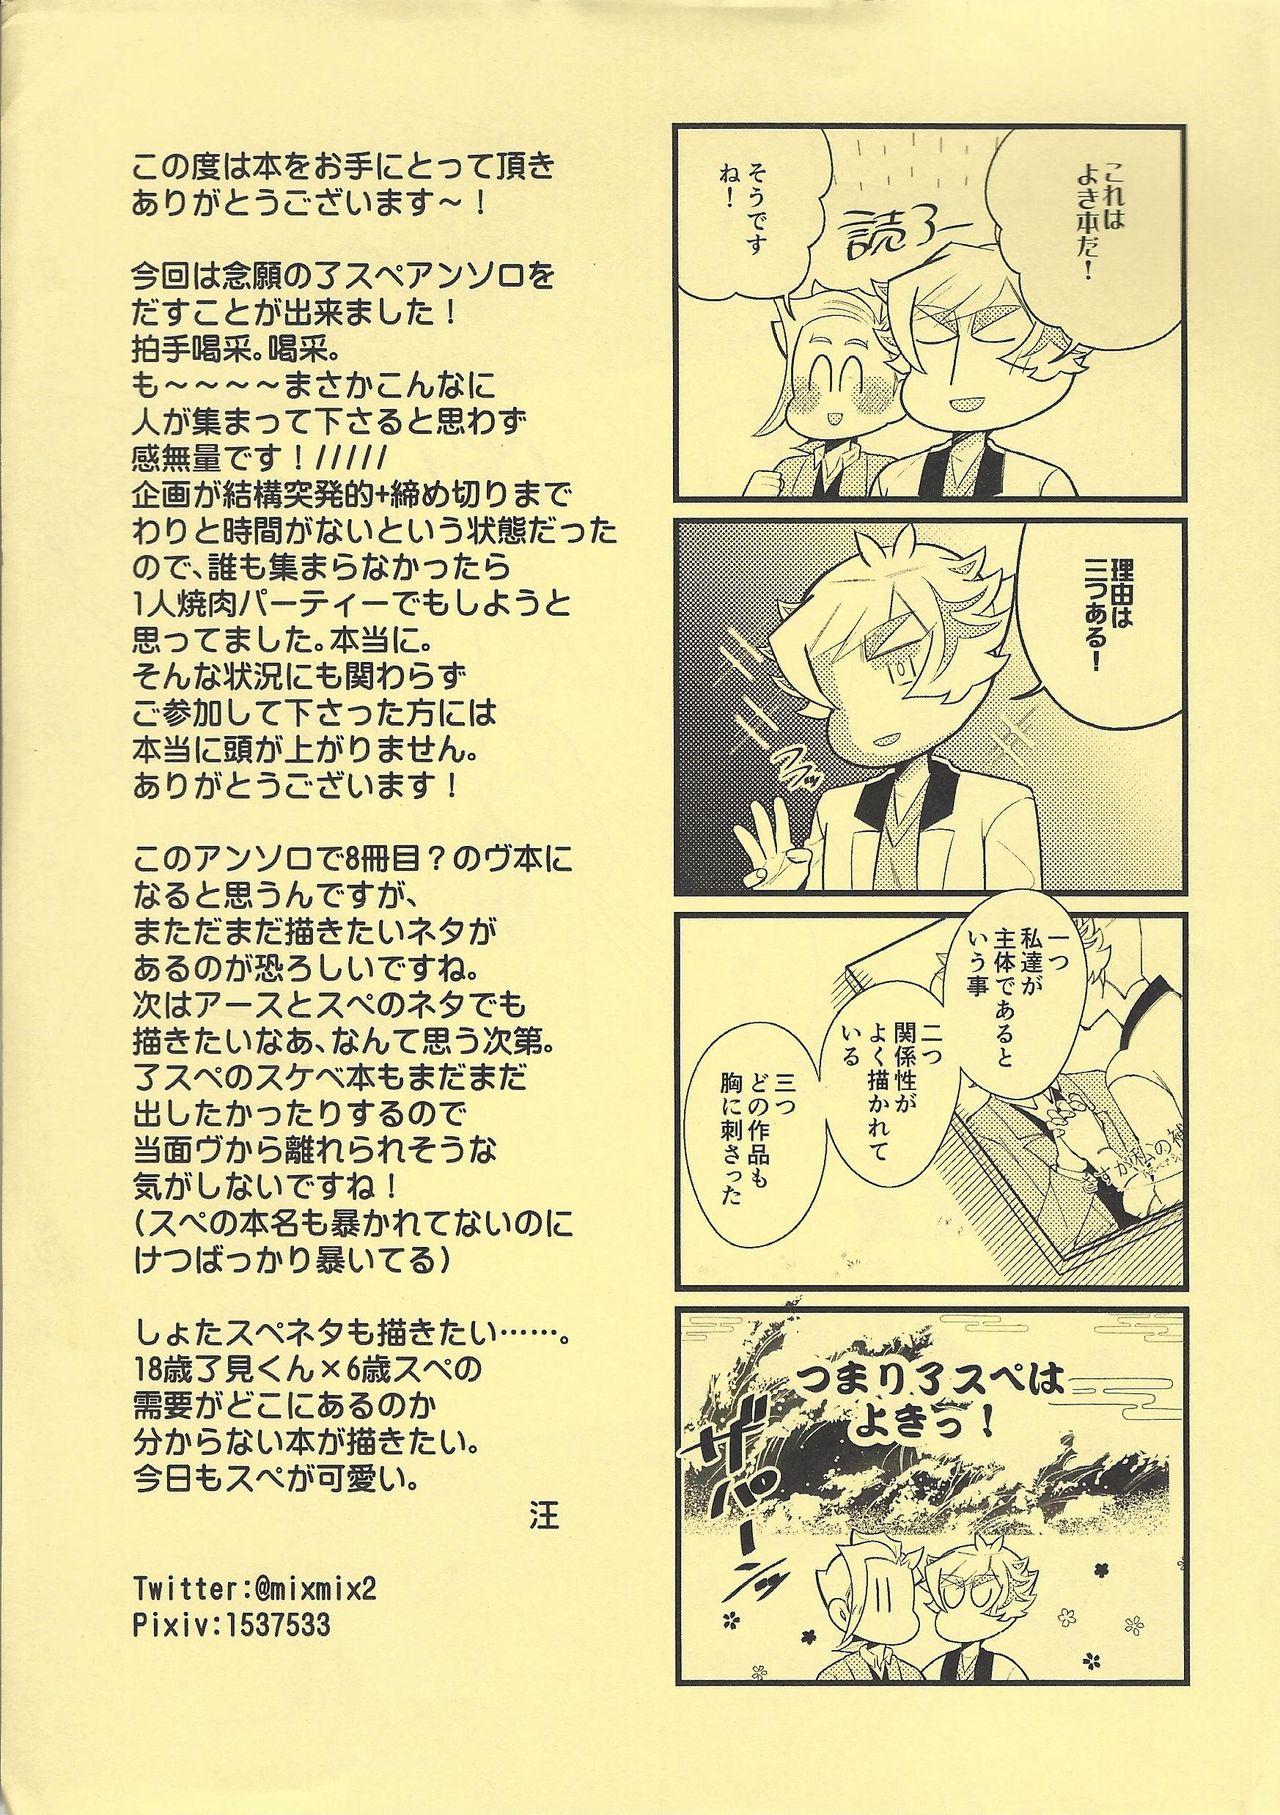 Gaycum Sasuga watashi no hosa-kanda - Yu-gi-oh vrains Free Amatuer - Page 60